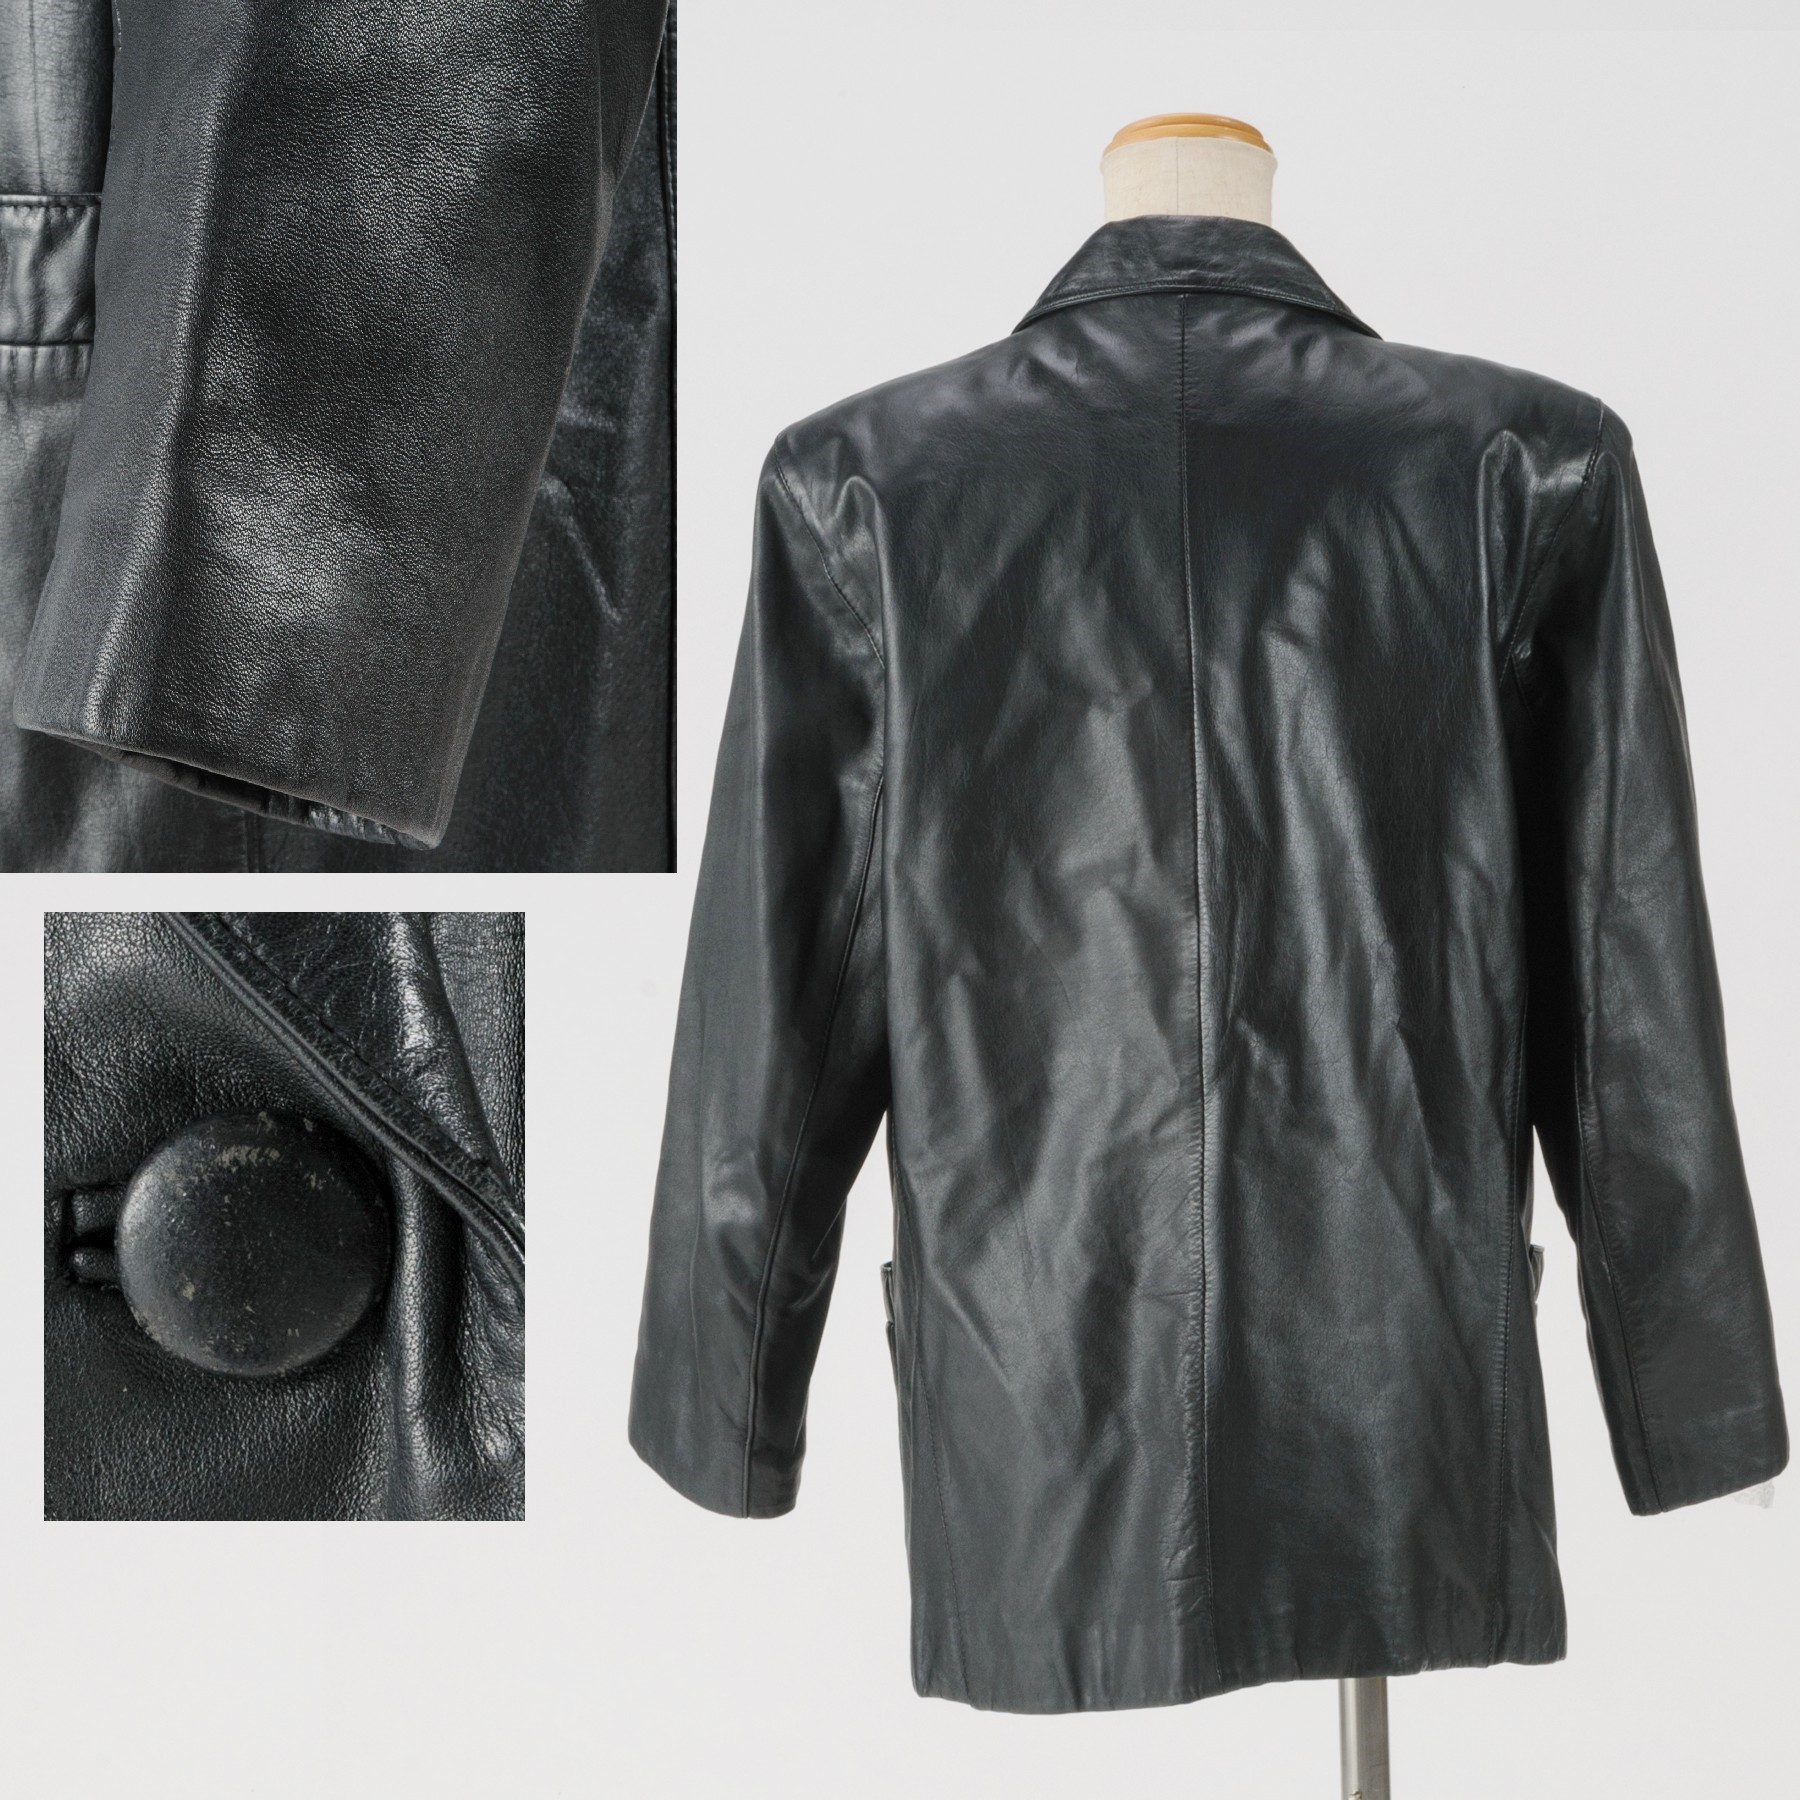 日本最大級 中古 本物綺麗tannery Eastの黒いレザージャケット 表記サイズm 着丈67 肩幅42 身幅50 袖丈54cm D15 44 1 2 1 質カラーズ 人気ブランドを Www Demetria Com Uy